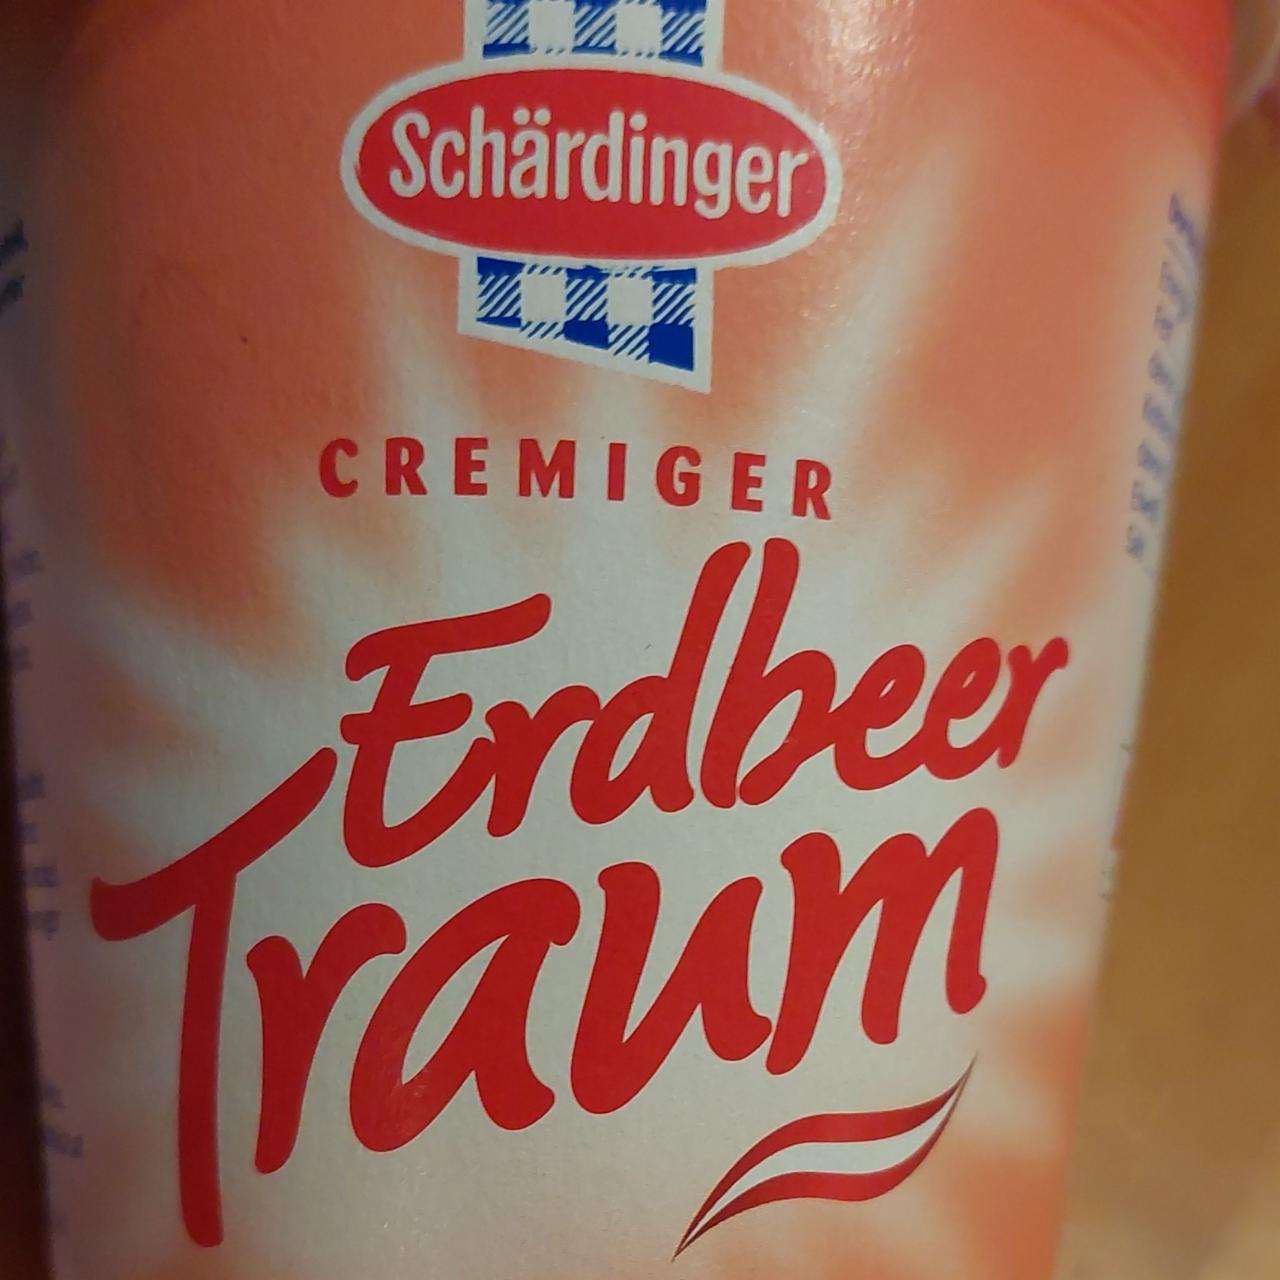 Fotografie - Cremiger Erdbeer Traum Schärdinger